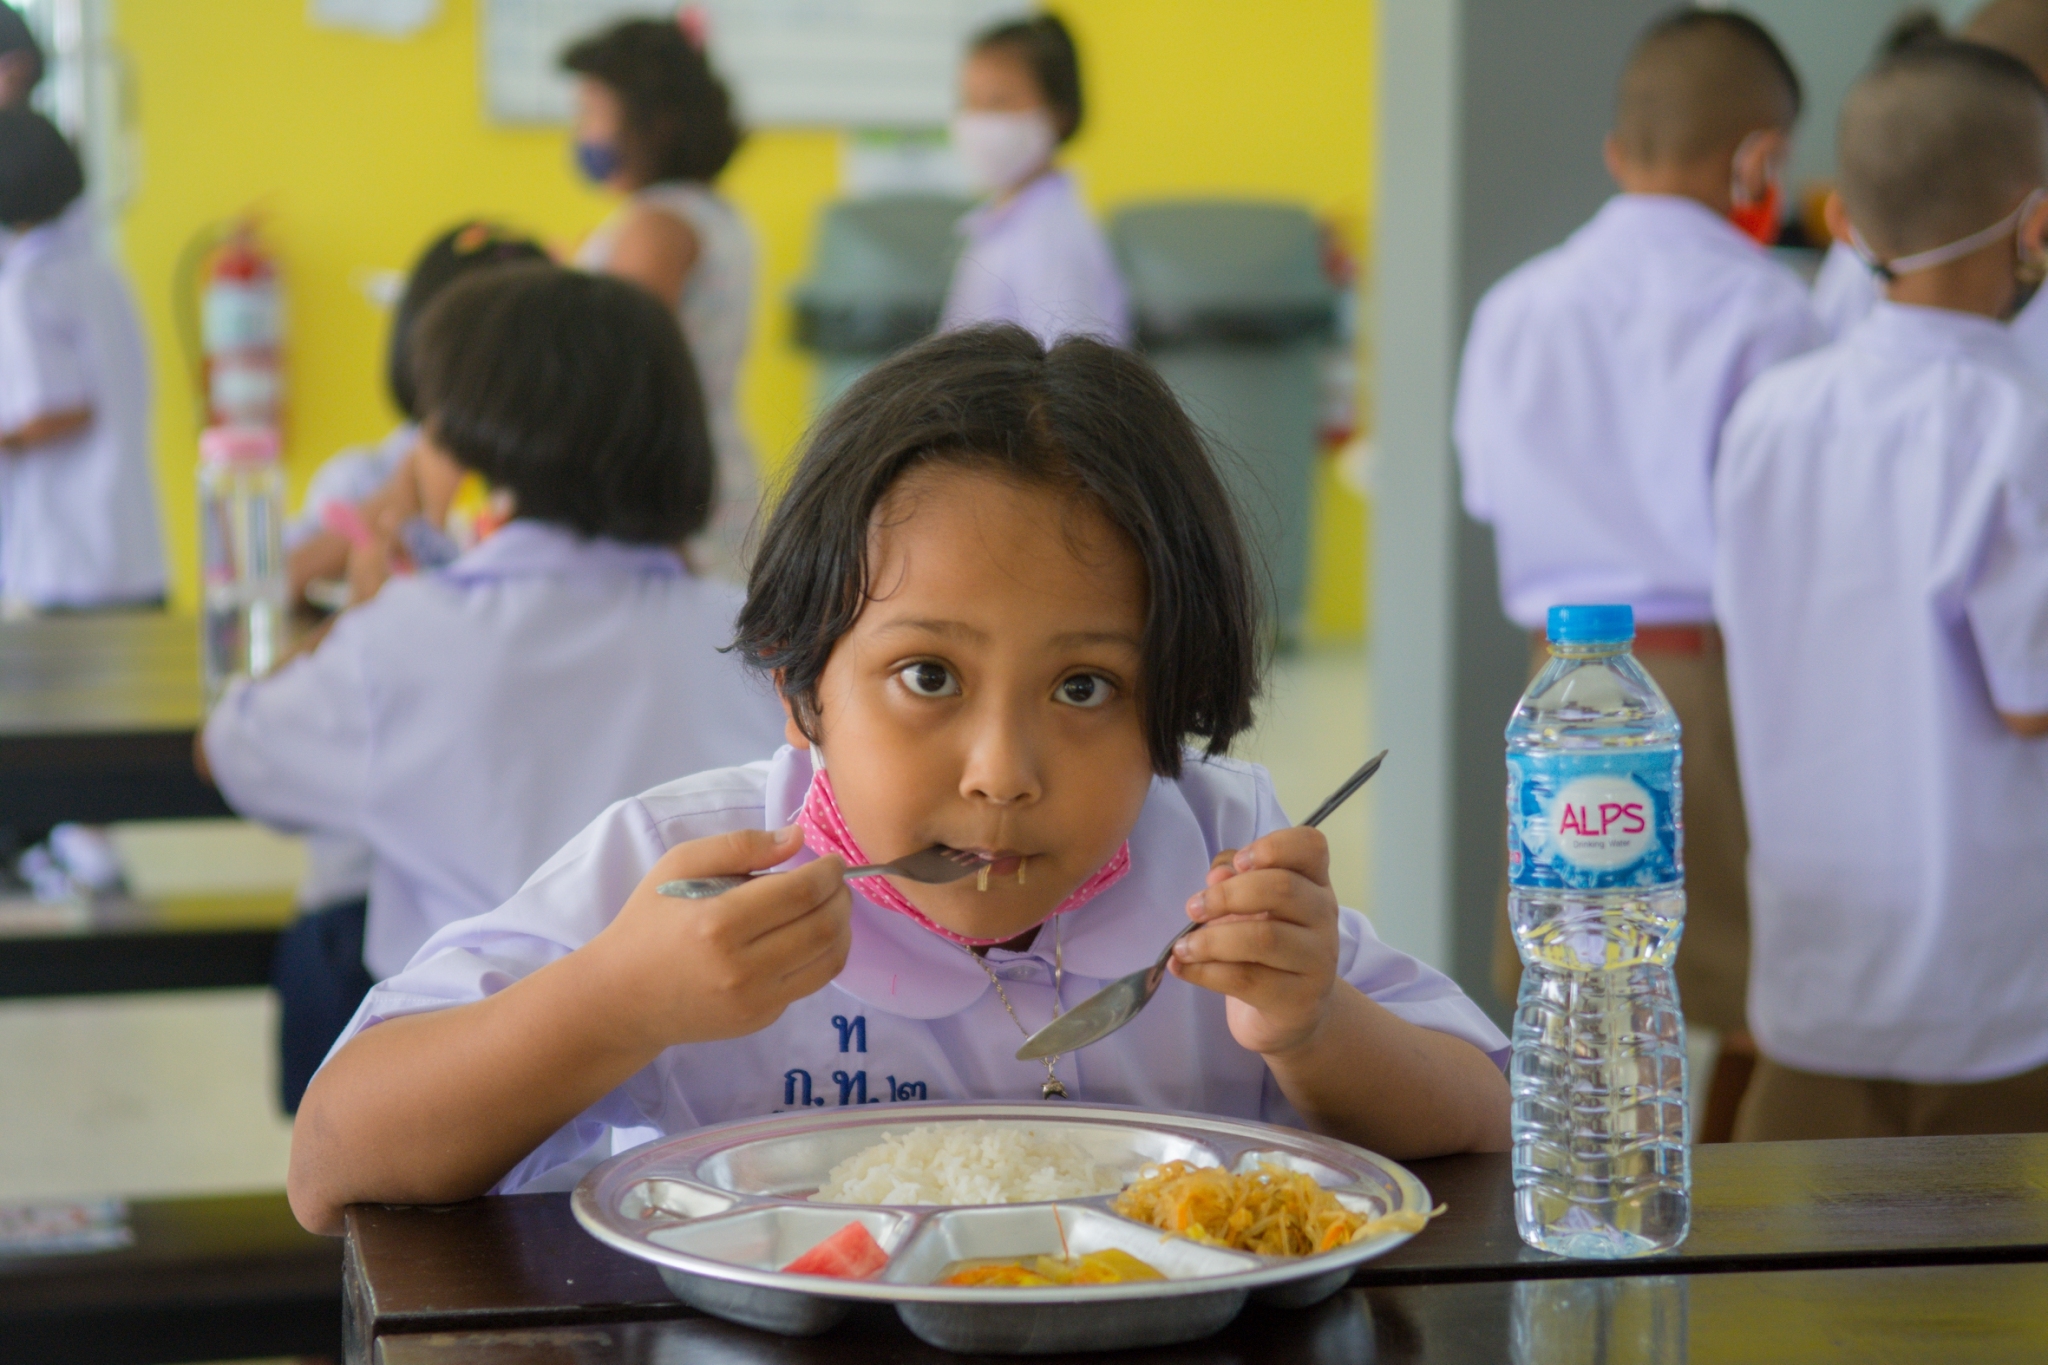 เทศบาลเมืองกะทู้ต่อยอดโรงครัวช่วงโควิด-19 สู่บริการอาหารเช้า กลางวัน ให้นักเรียนโรงเรียนในสังกัดเพื่อแบ่งเบาภาระผู้ปกครอง